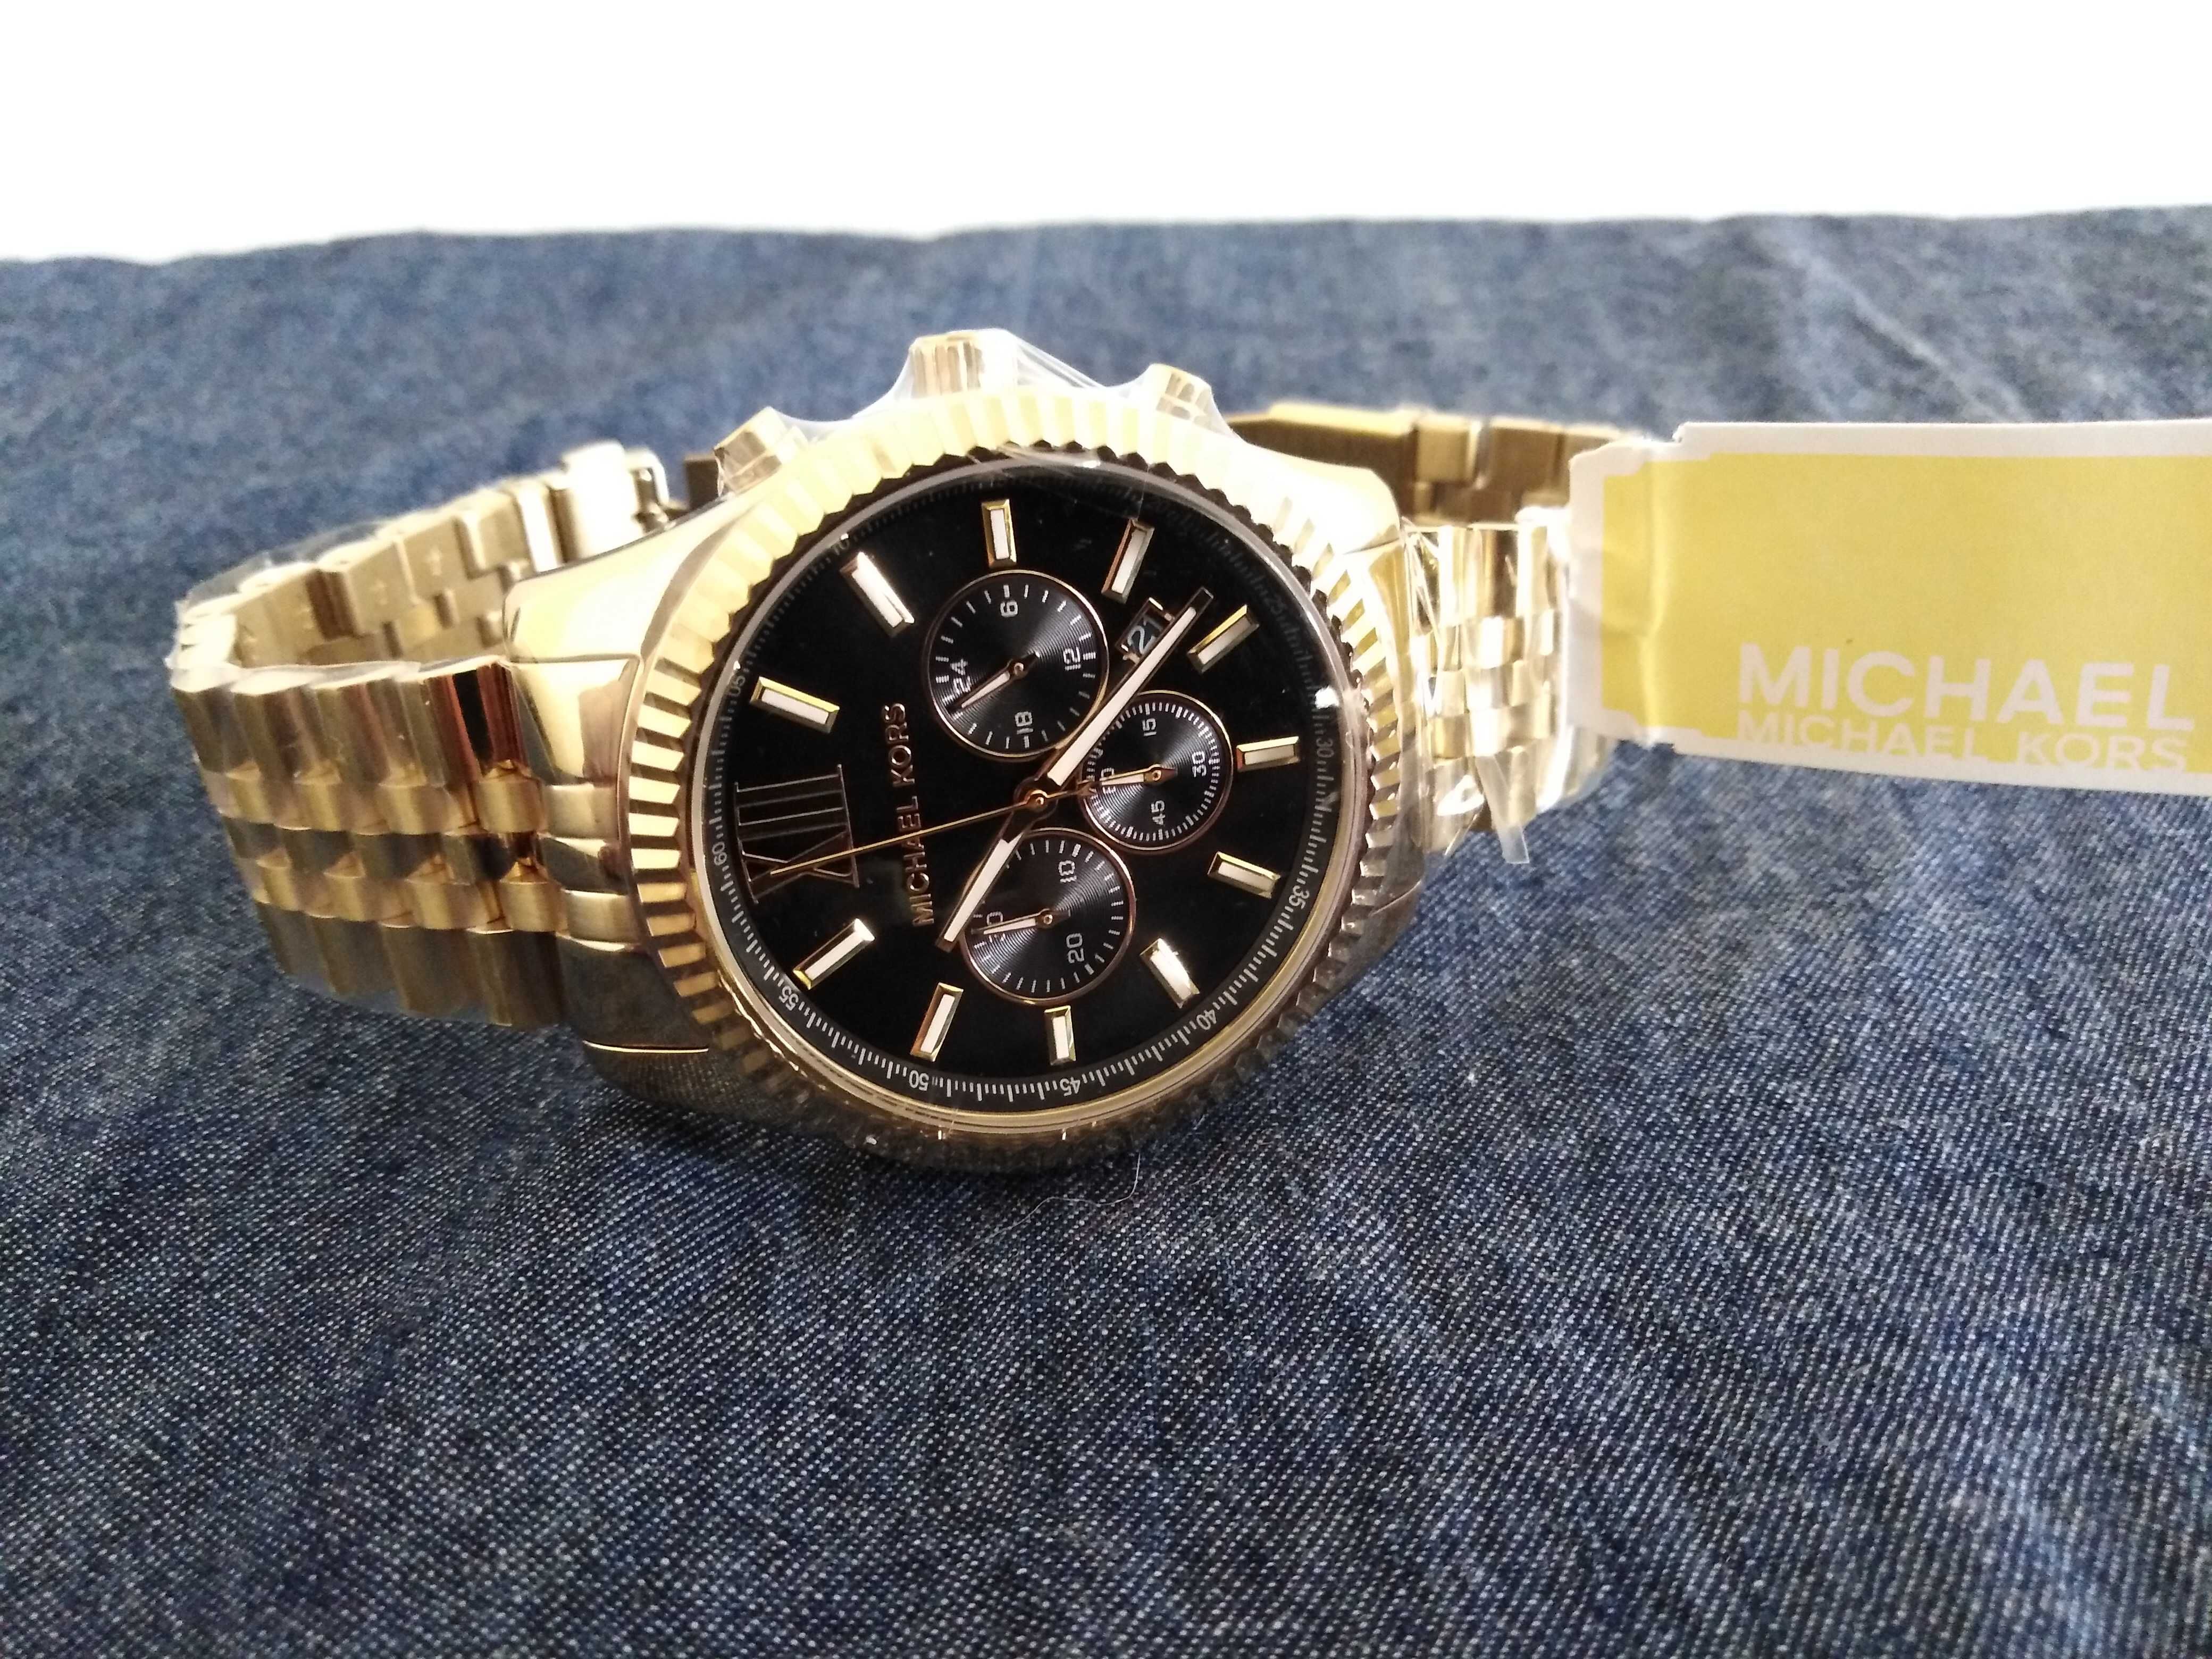 Часовник Michael Kors MK8286 Lexington Chronograph стилен и елегантен